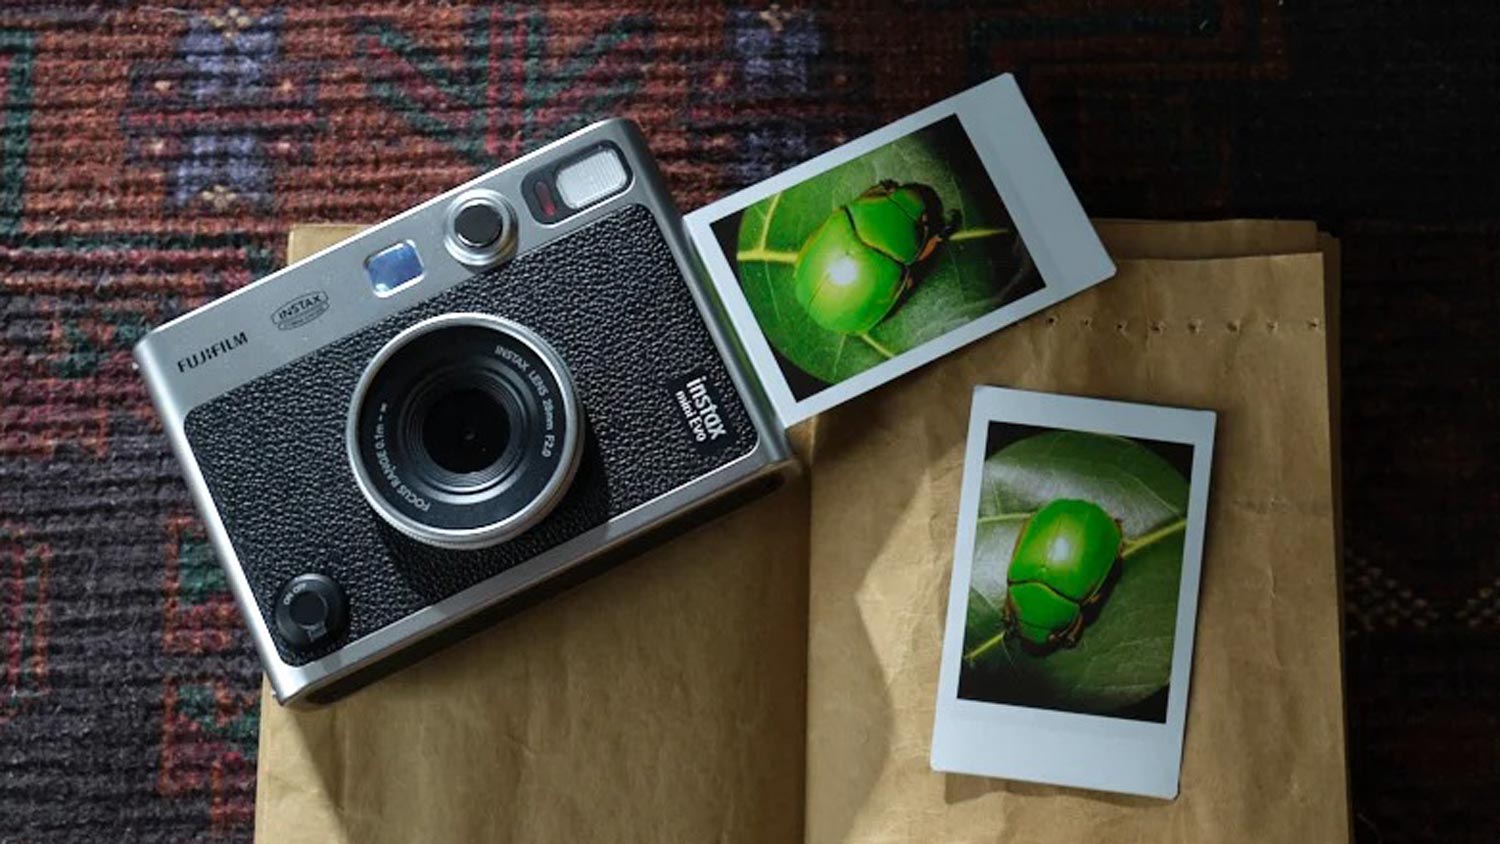 Fujifilm Mini Evo Hybrid Ialah Kamera Digital Yang Boleh Mencetak Sendiri Gambar Yang Diambil